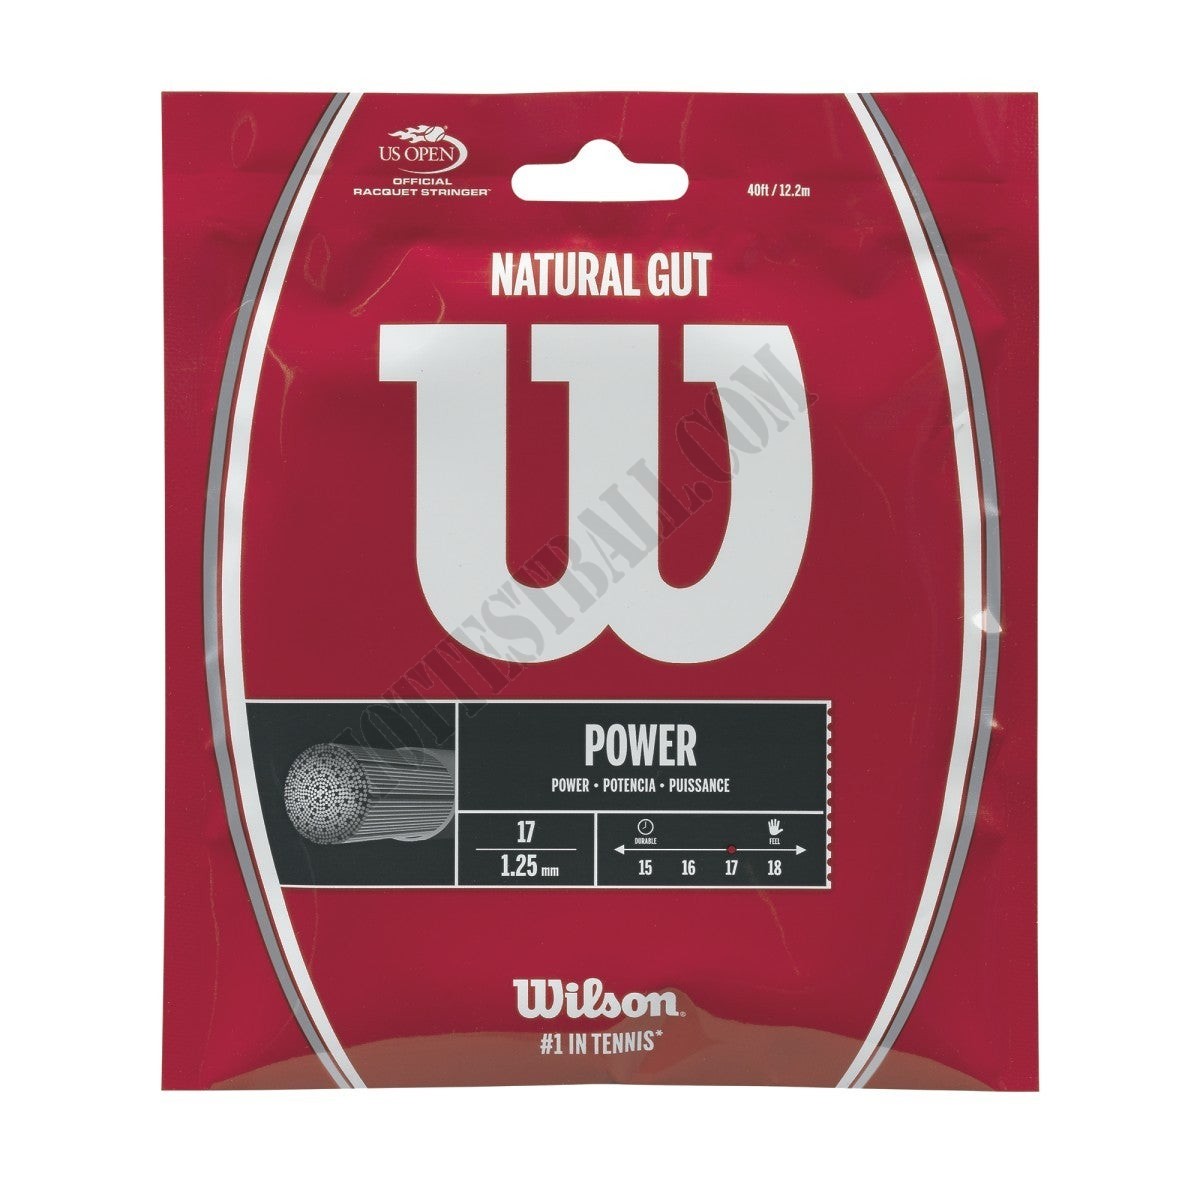 Natural Gut Power Tennis String - Set - Wilson Discount Store - Natural Gut Power Tennis String - Set - Wilson Discount Store